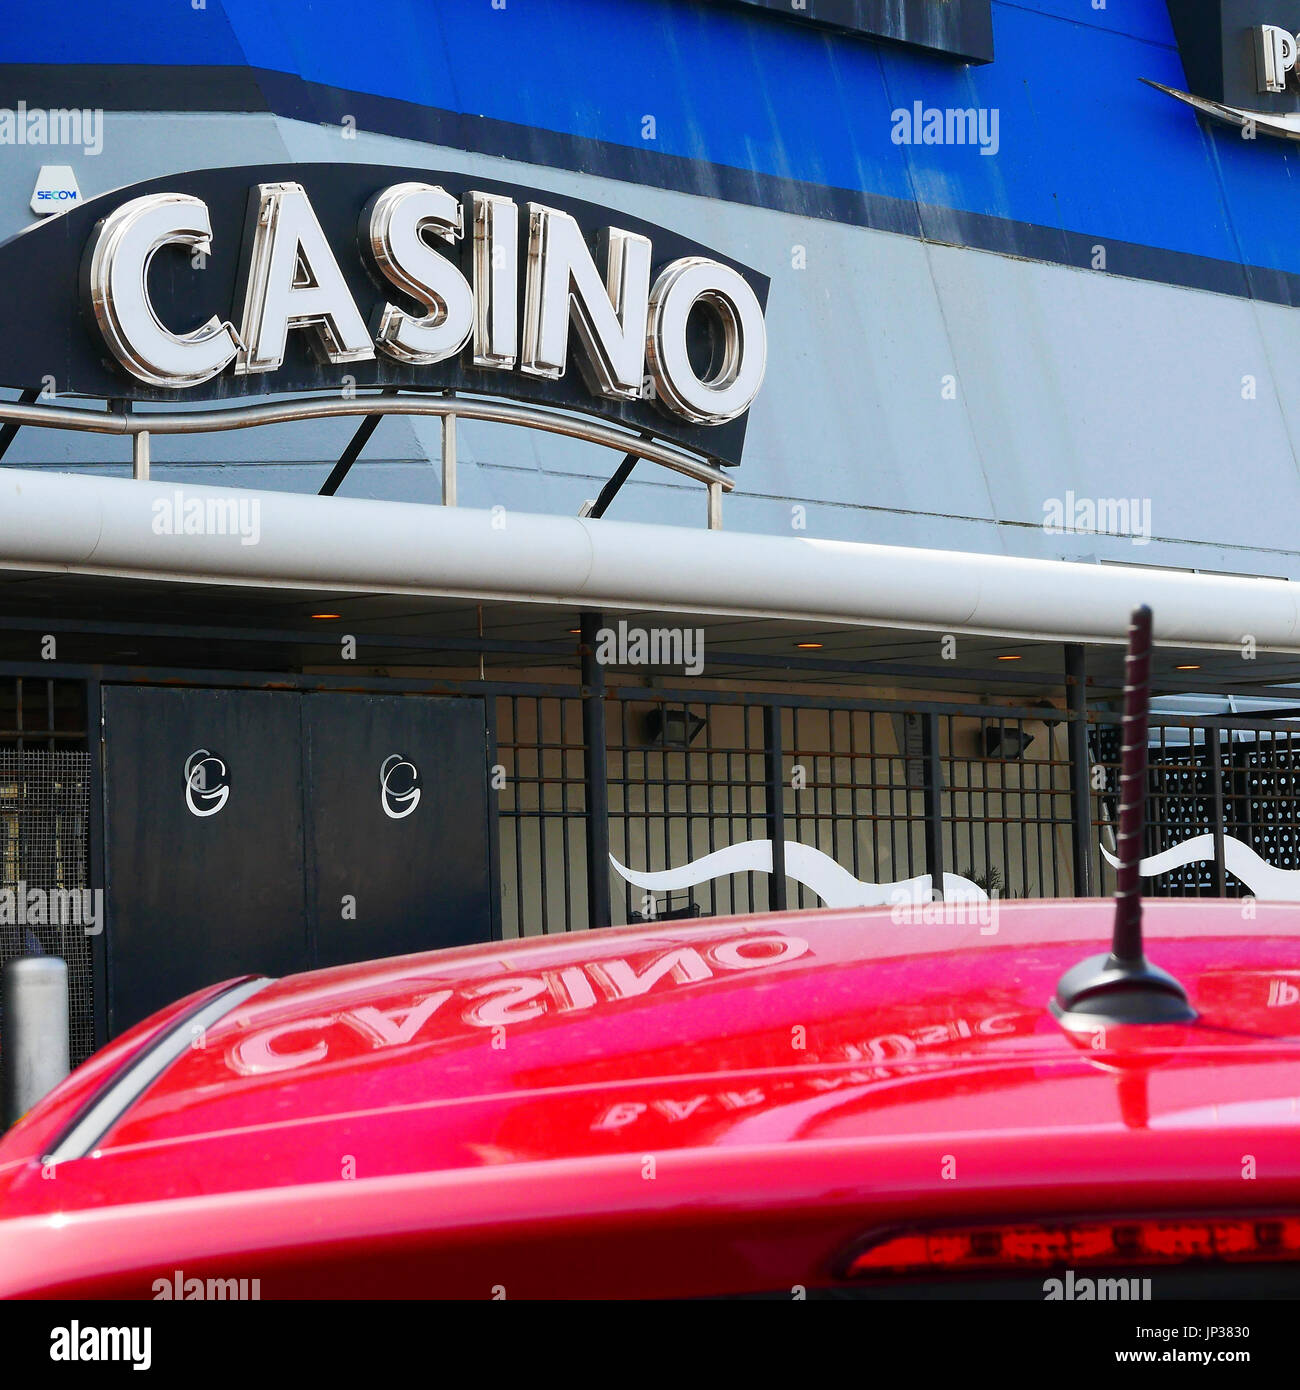 Casino-Zeichen spiegelt sich im Dach ein rotes Auto Stockfoto